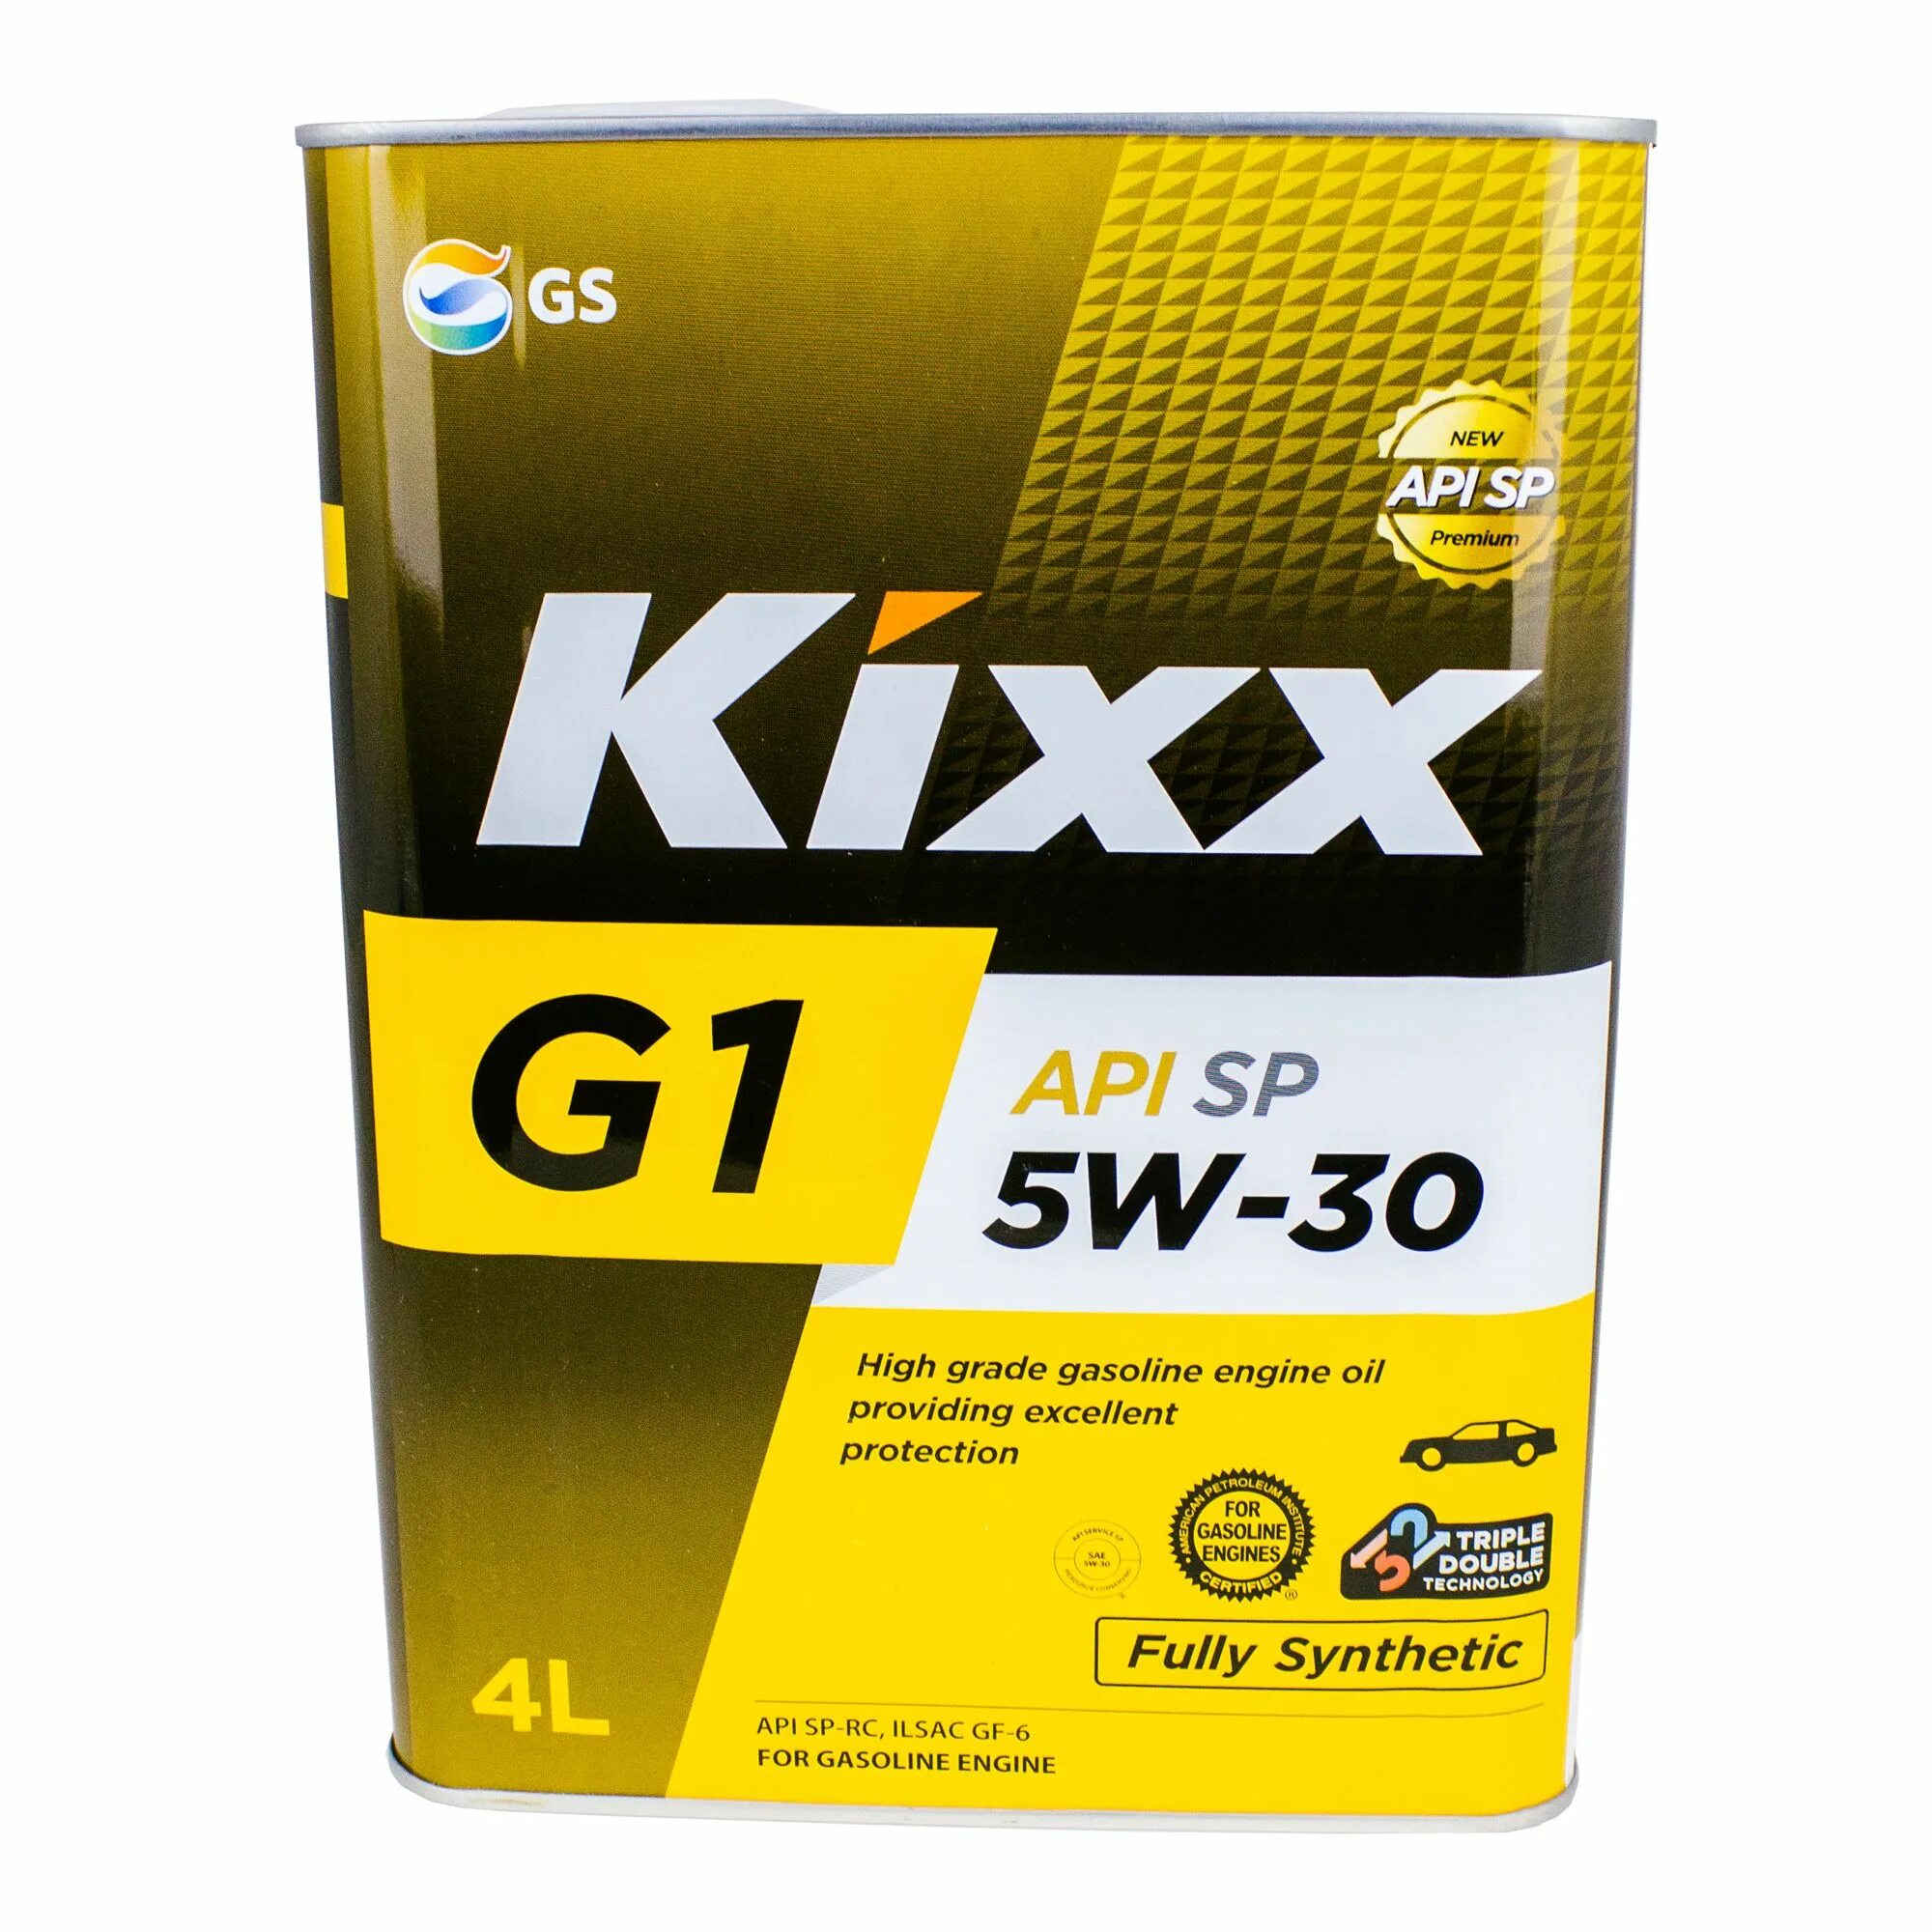 Kixx pao 1. Kixx g1 SP 5w-30. Kixx 5w30 SP. Масло Kixx 5w30 синтетика. Кикс 5w30 синтетика.